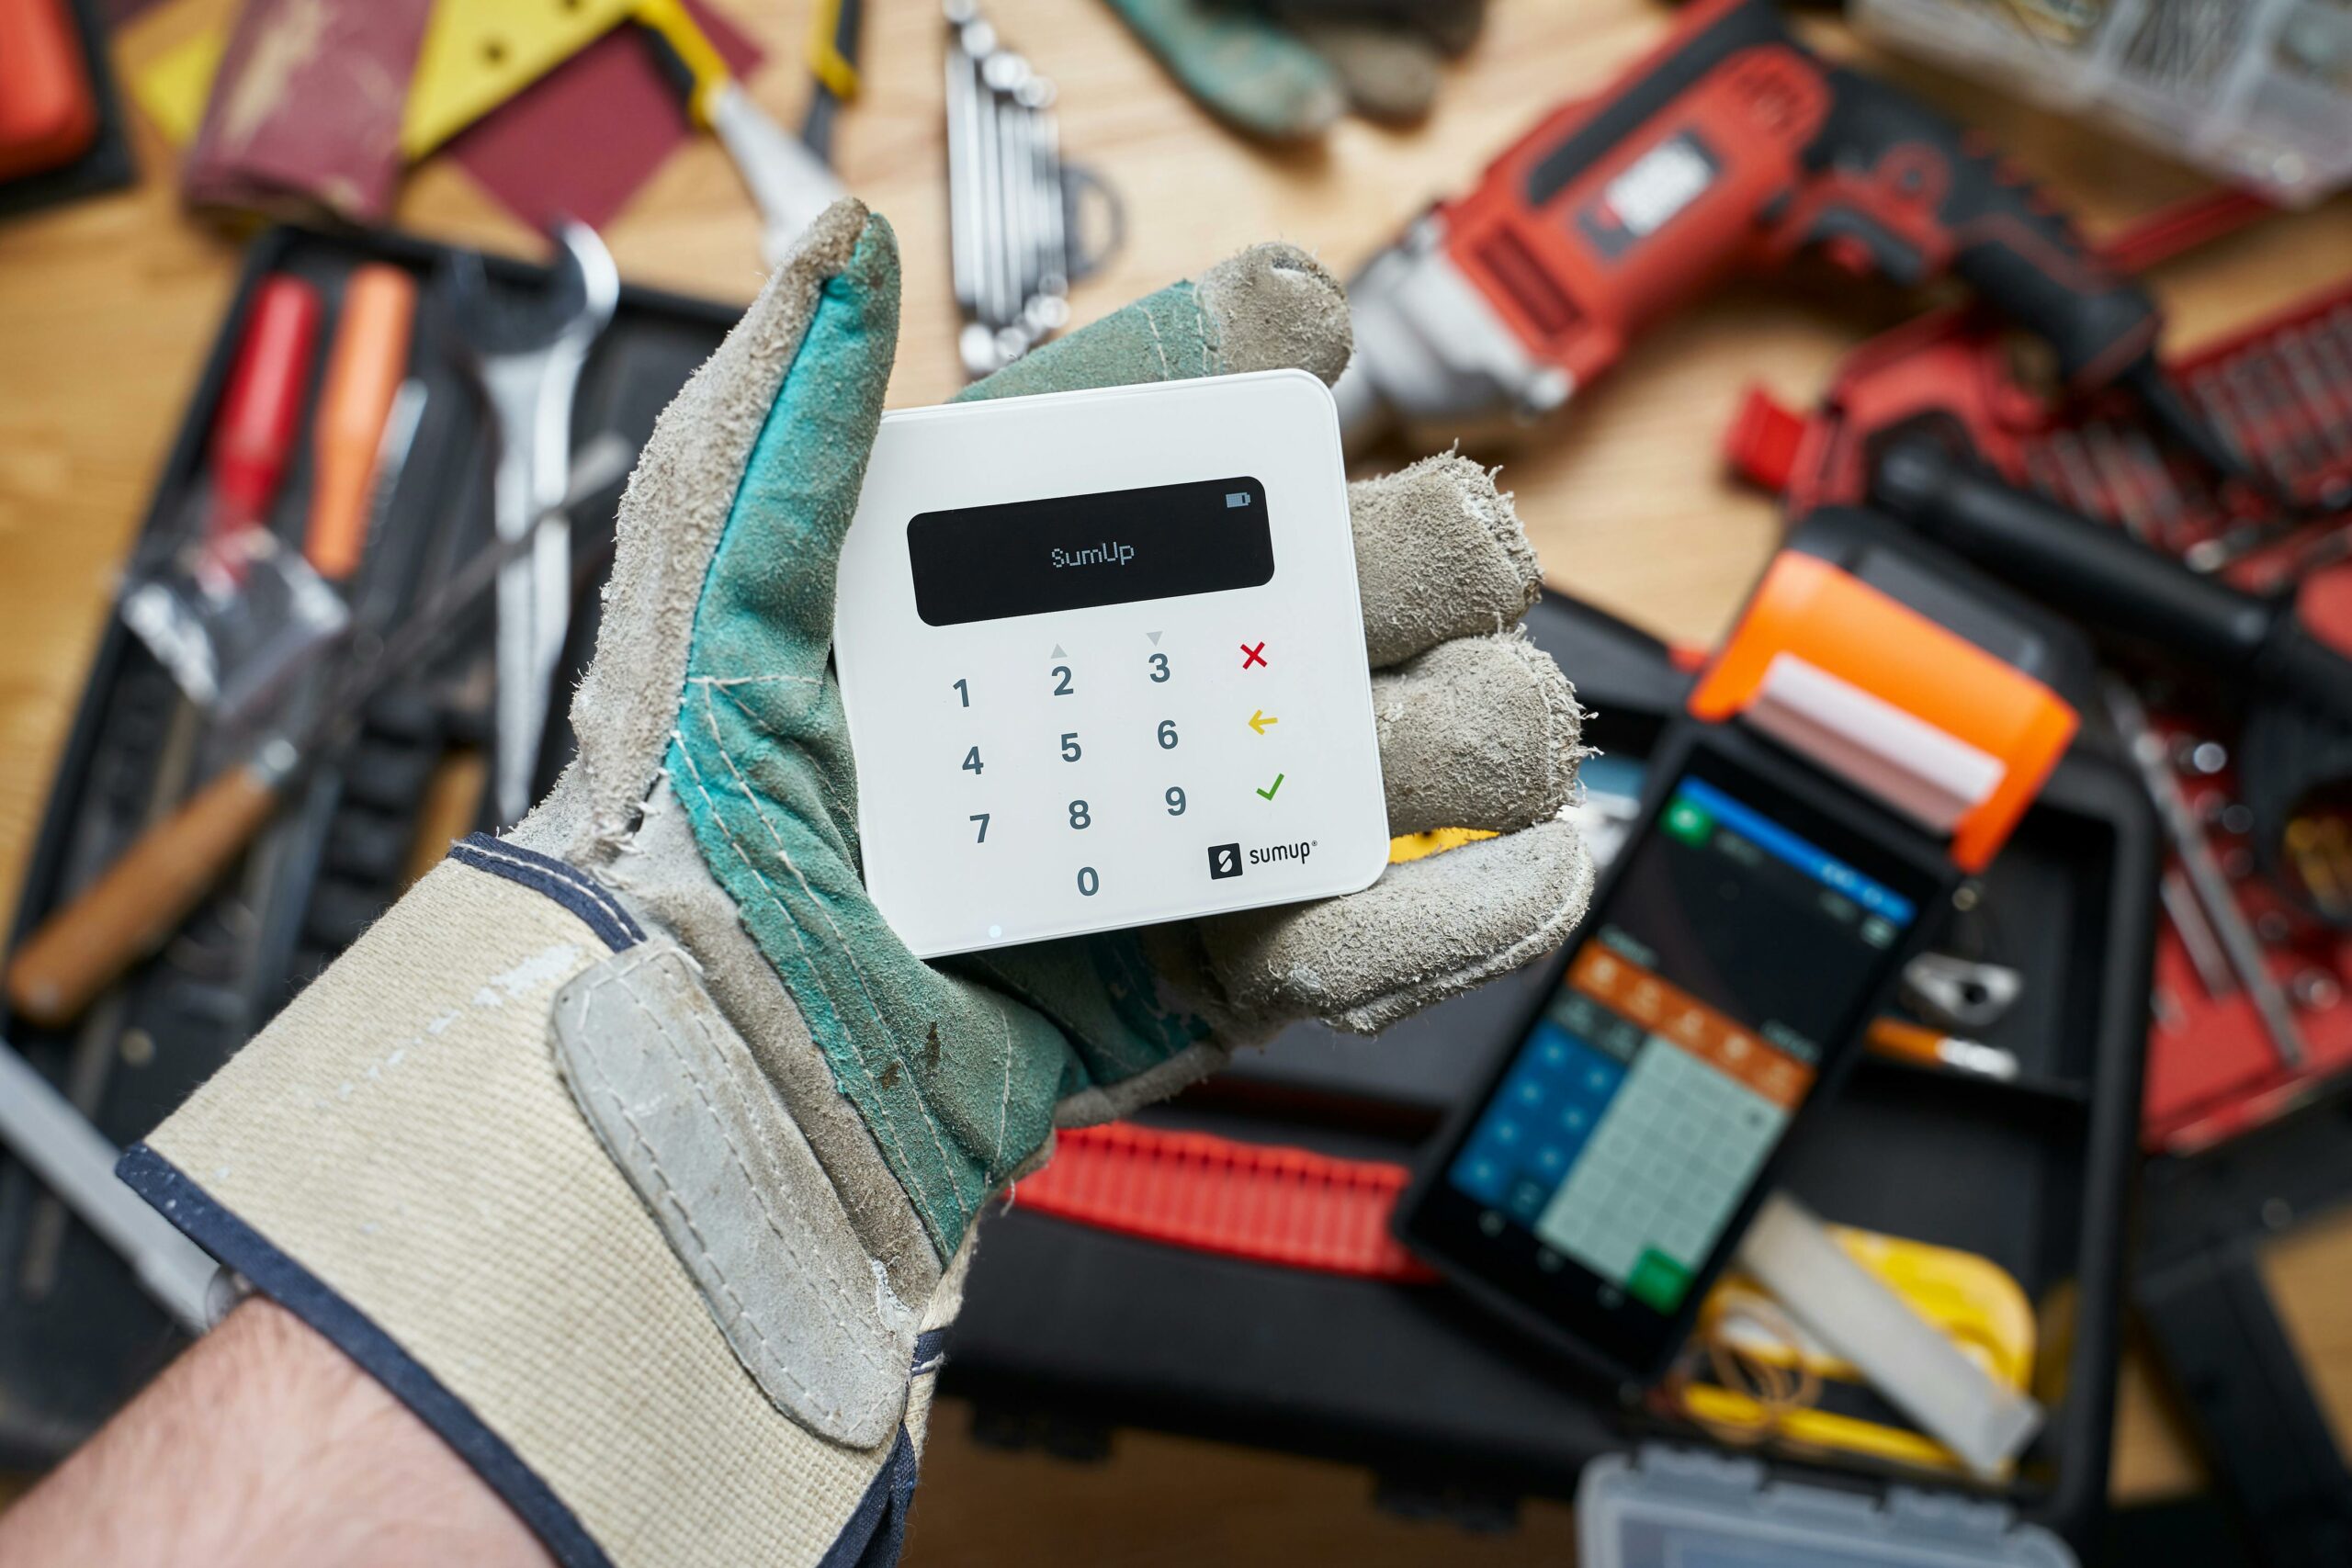 Bild, auf dem ein elektronisches Kassensystem zu sehen ist, welches von einer Hand im Handschuh gehalten wird